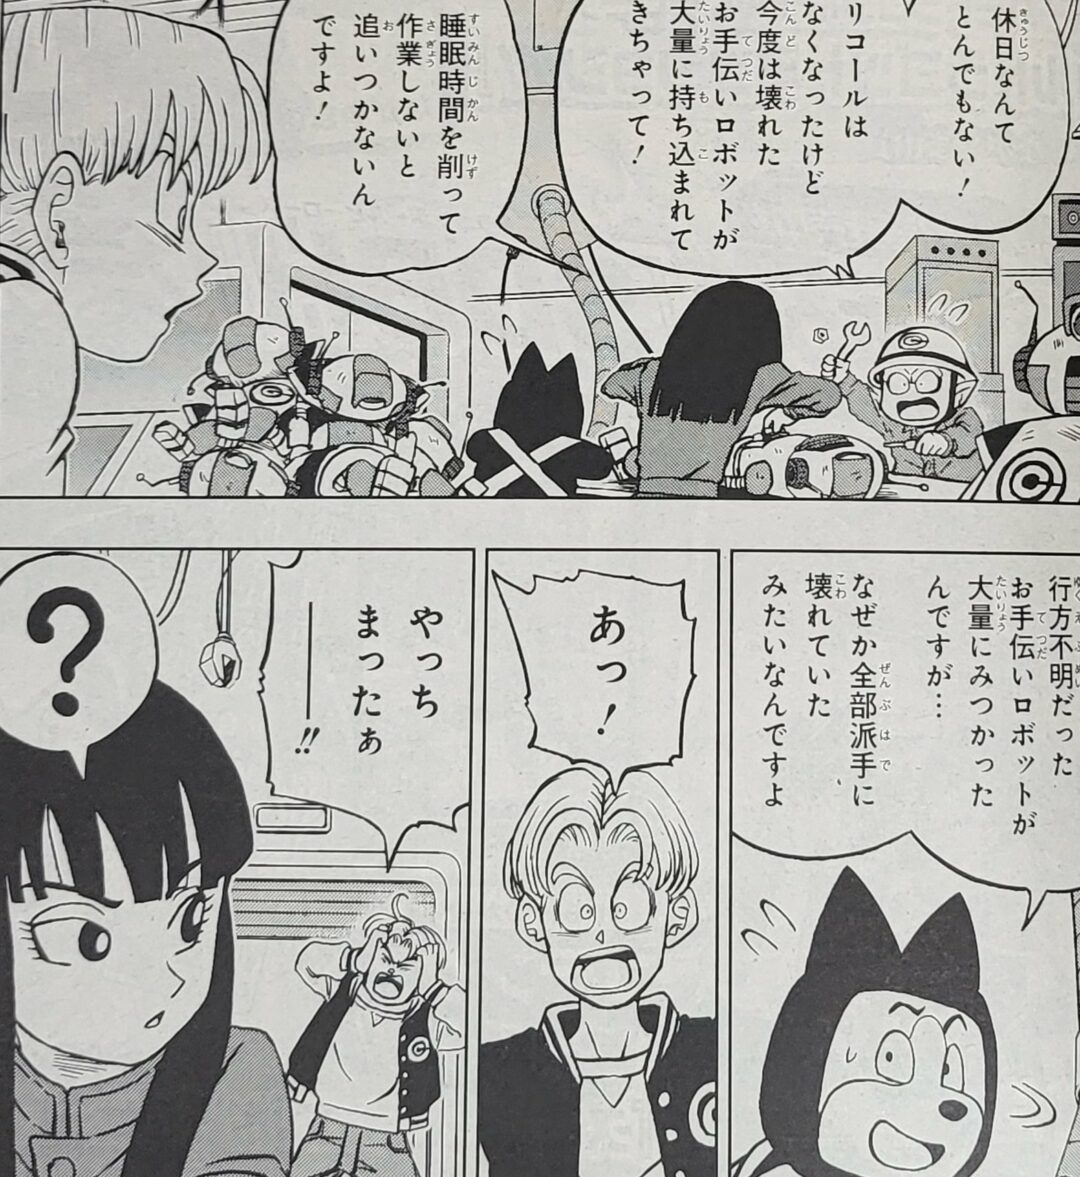 Daiko O Saiyajin on X: AEEE! Primeiros imagens do mangá capítulo 88 de Dragon  Ball Super!! As cores oficiais do Black Freeza, Trunks Super saiyajin e os  zumbis androides do DR Hedo!